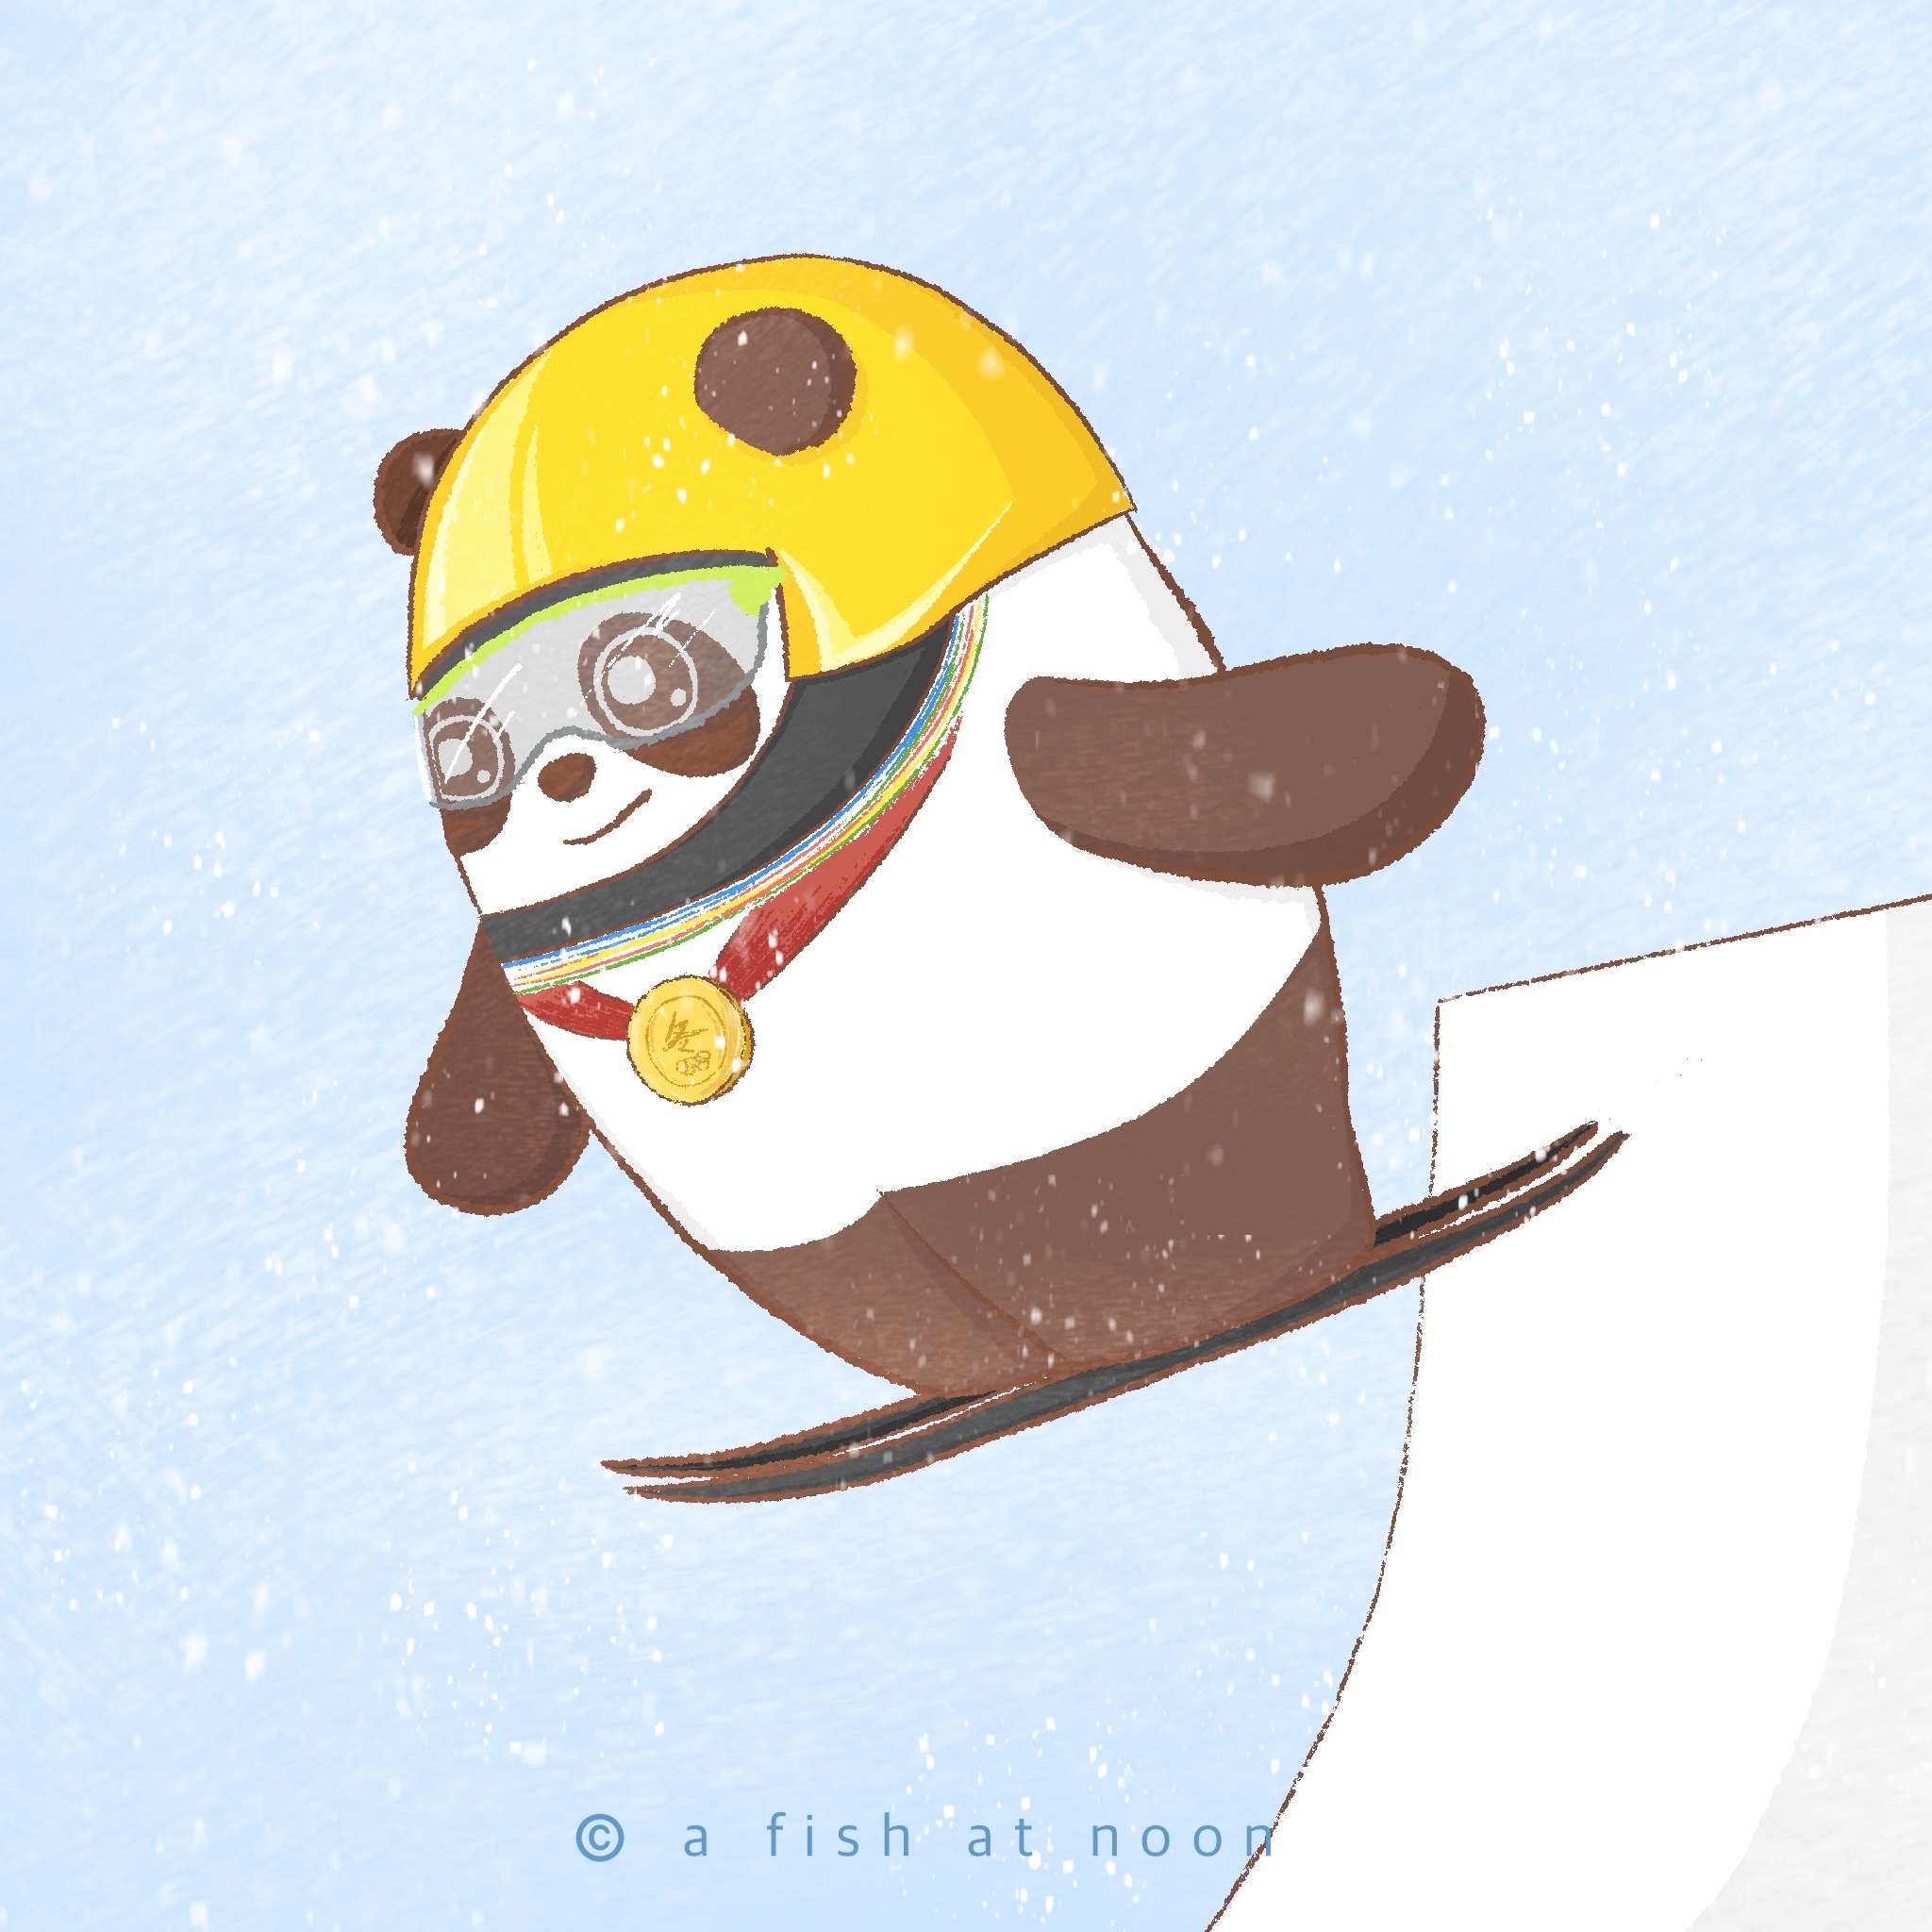 冰墩墩跳台滑雪卡通图图片